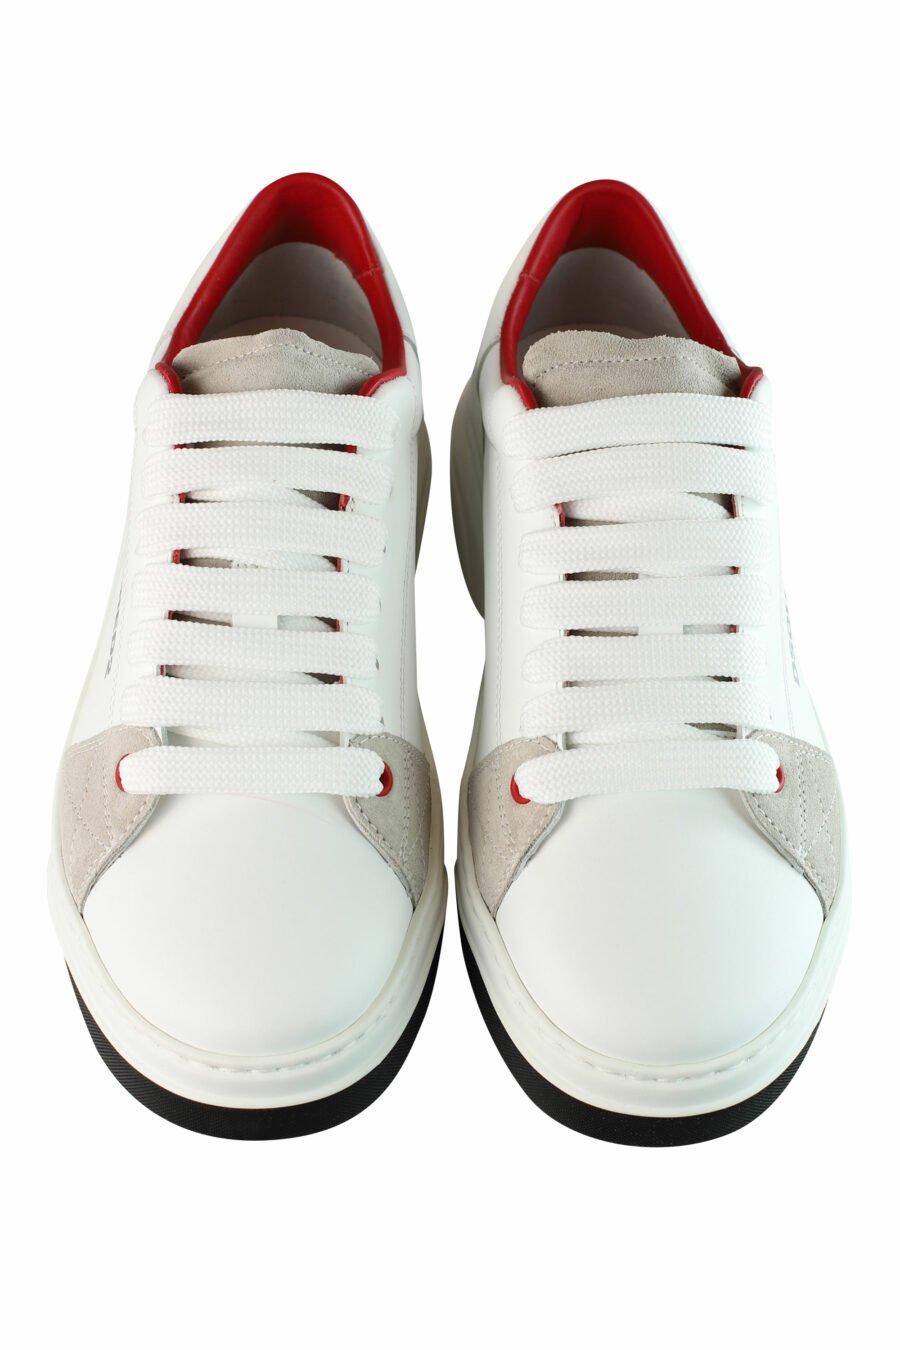 Zapatillas blancas con logo hoja roja y detalles beige - IMG 1441